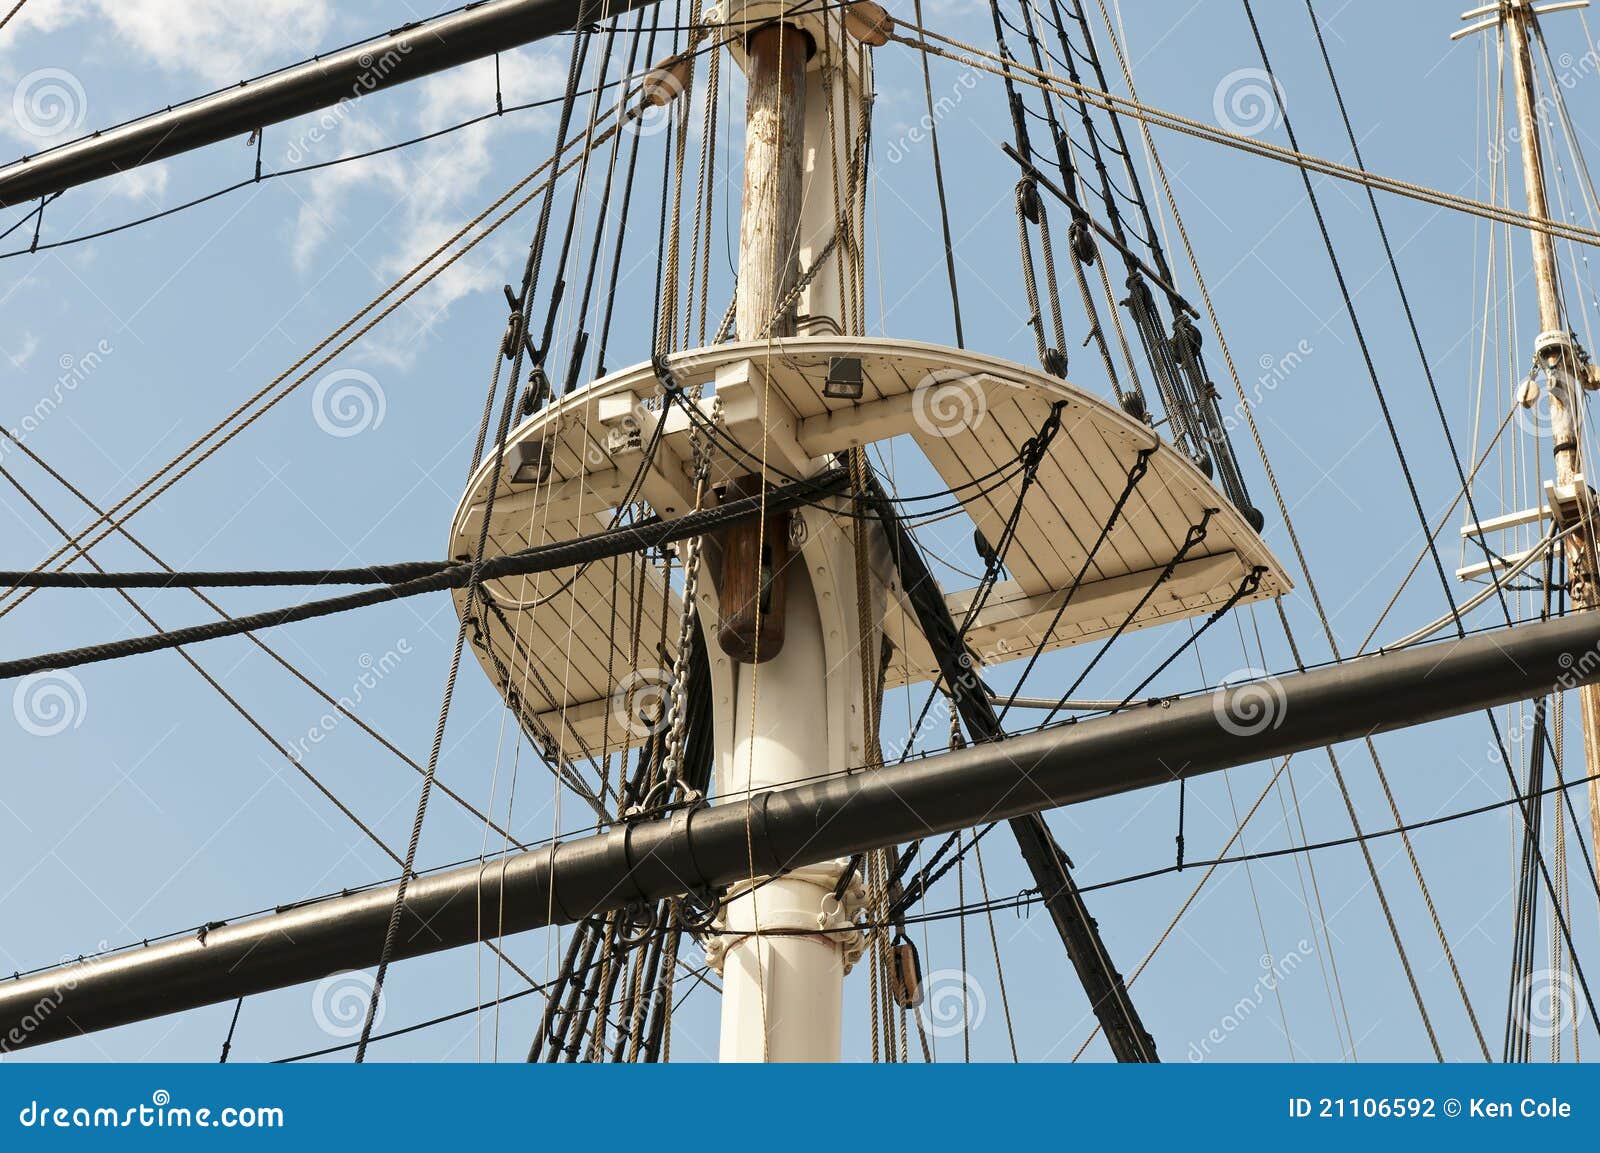 mast and sailboat rigging